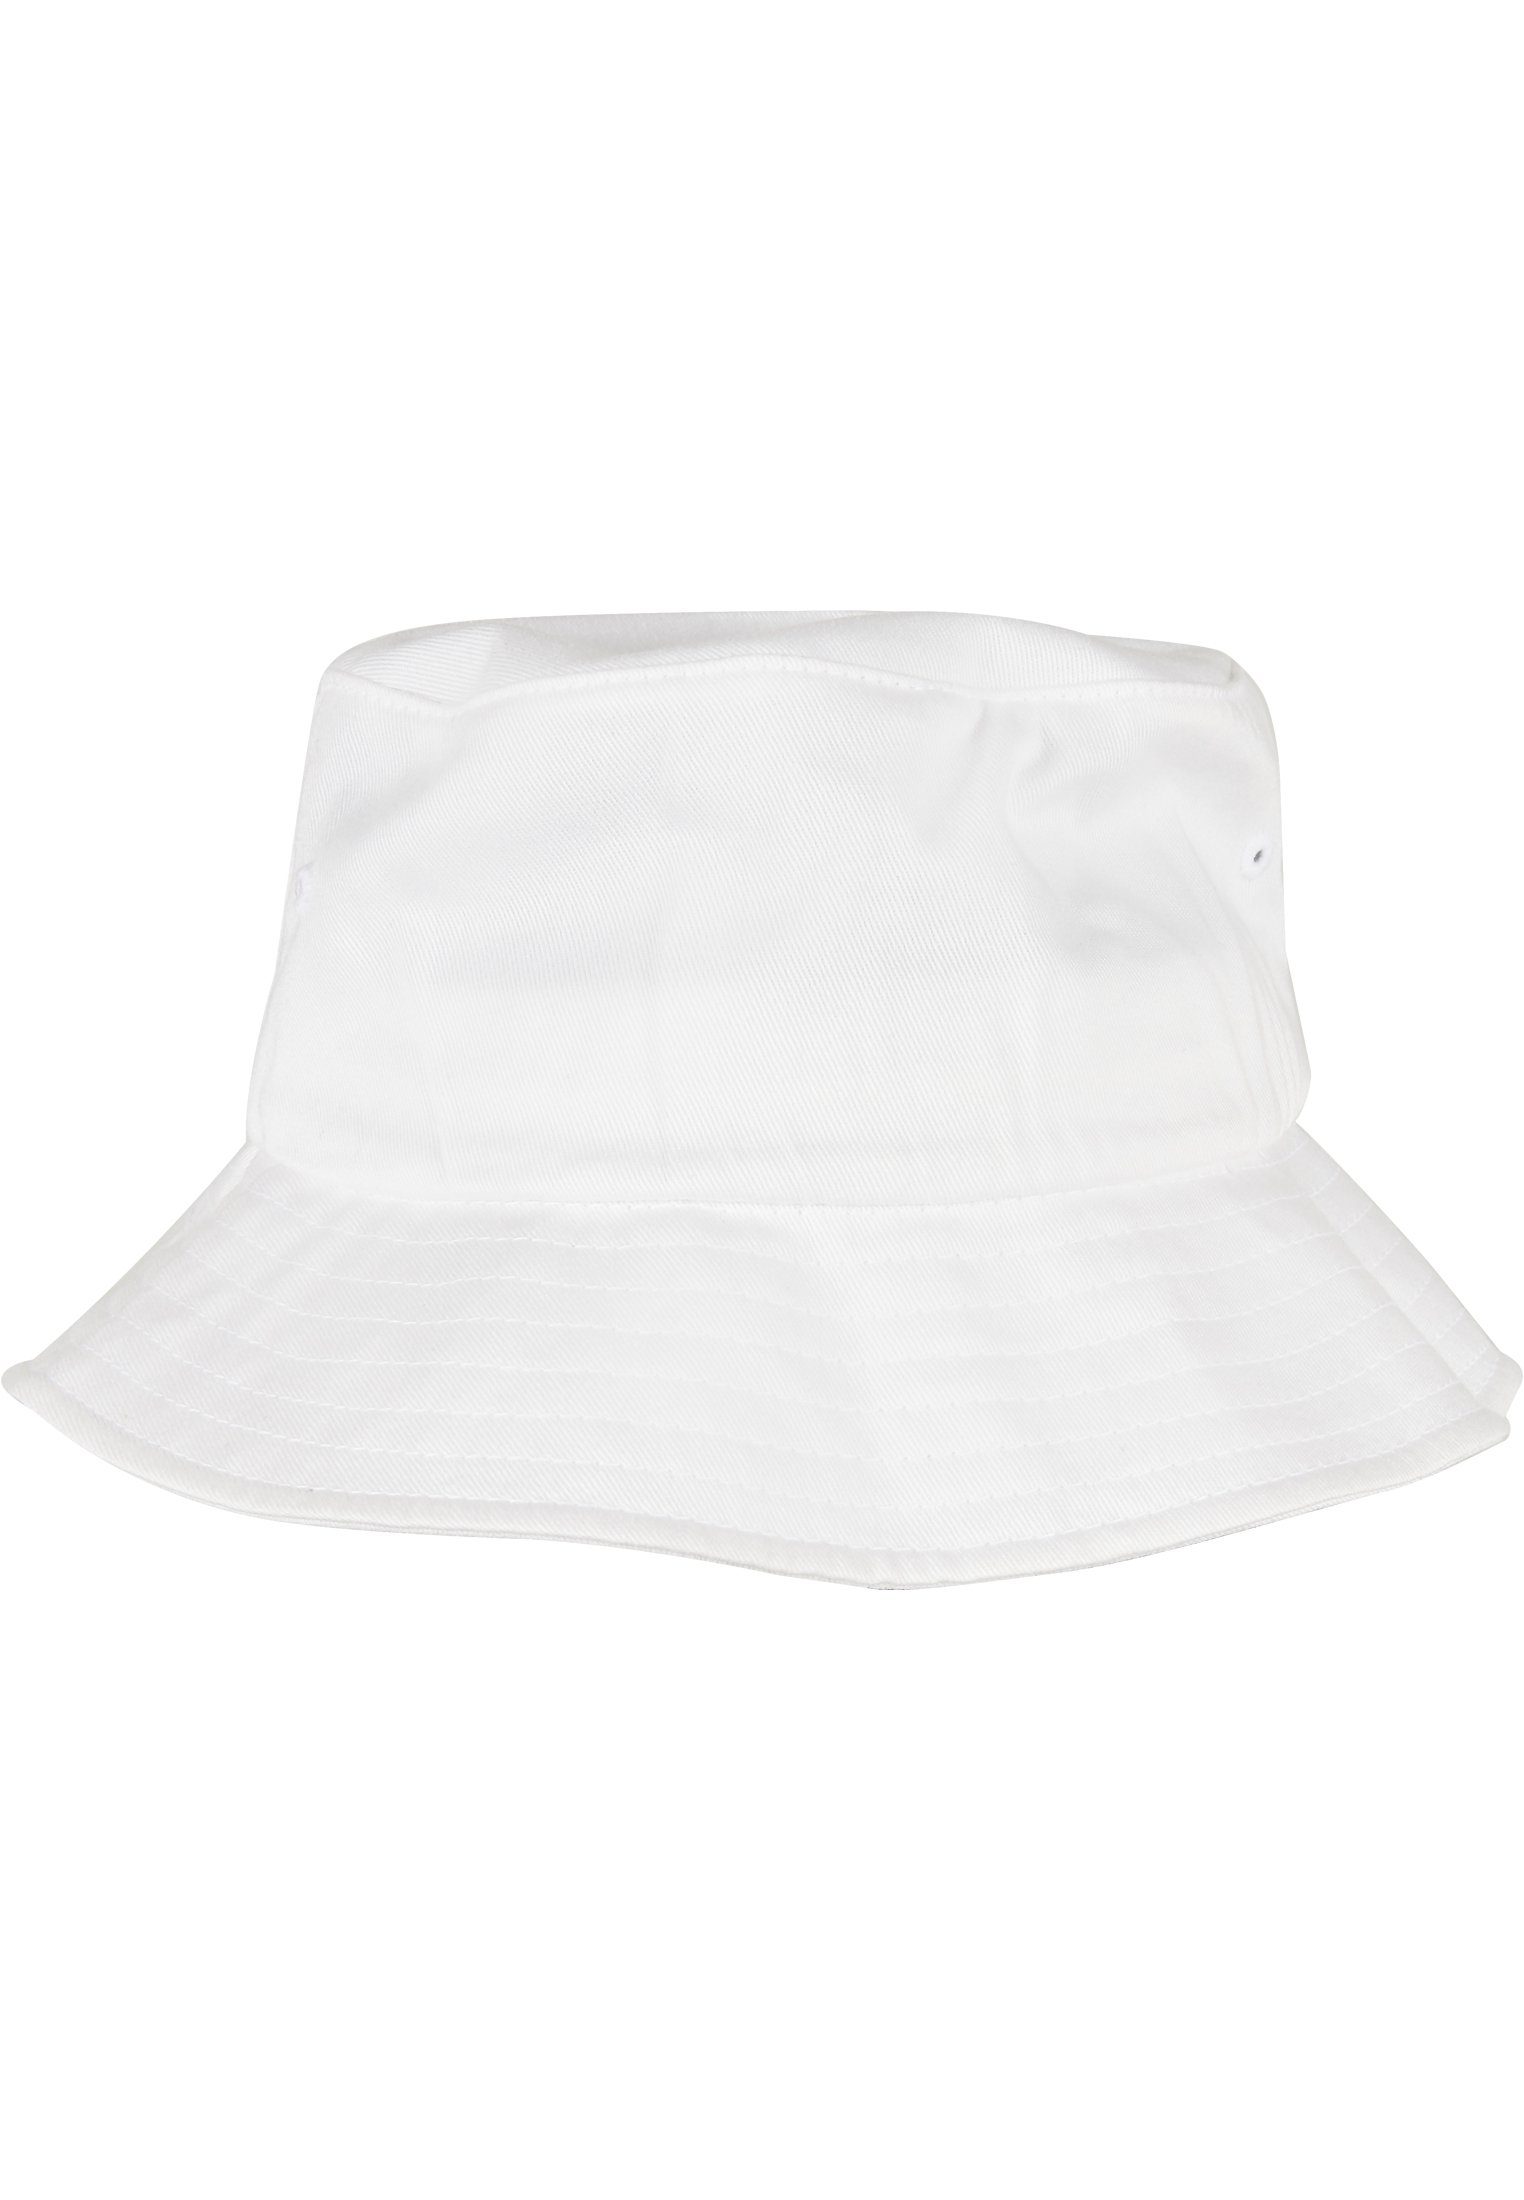 Flexfit Flex Cap Accessoires Organic white Cotton Hat Bucket